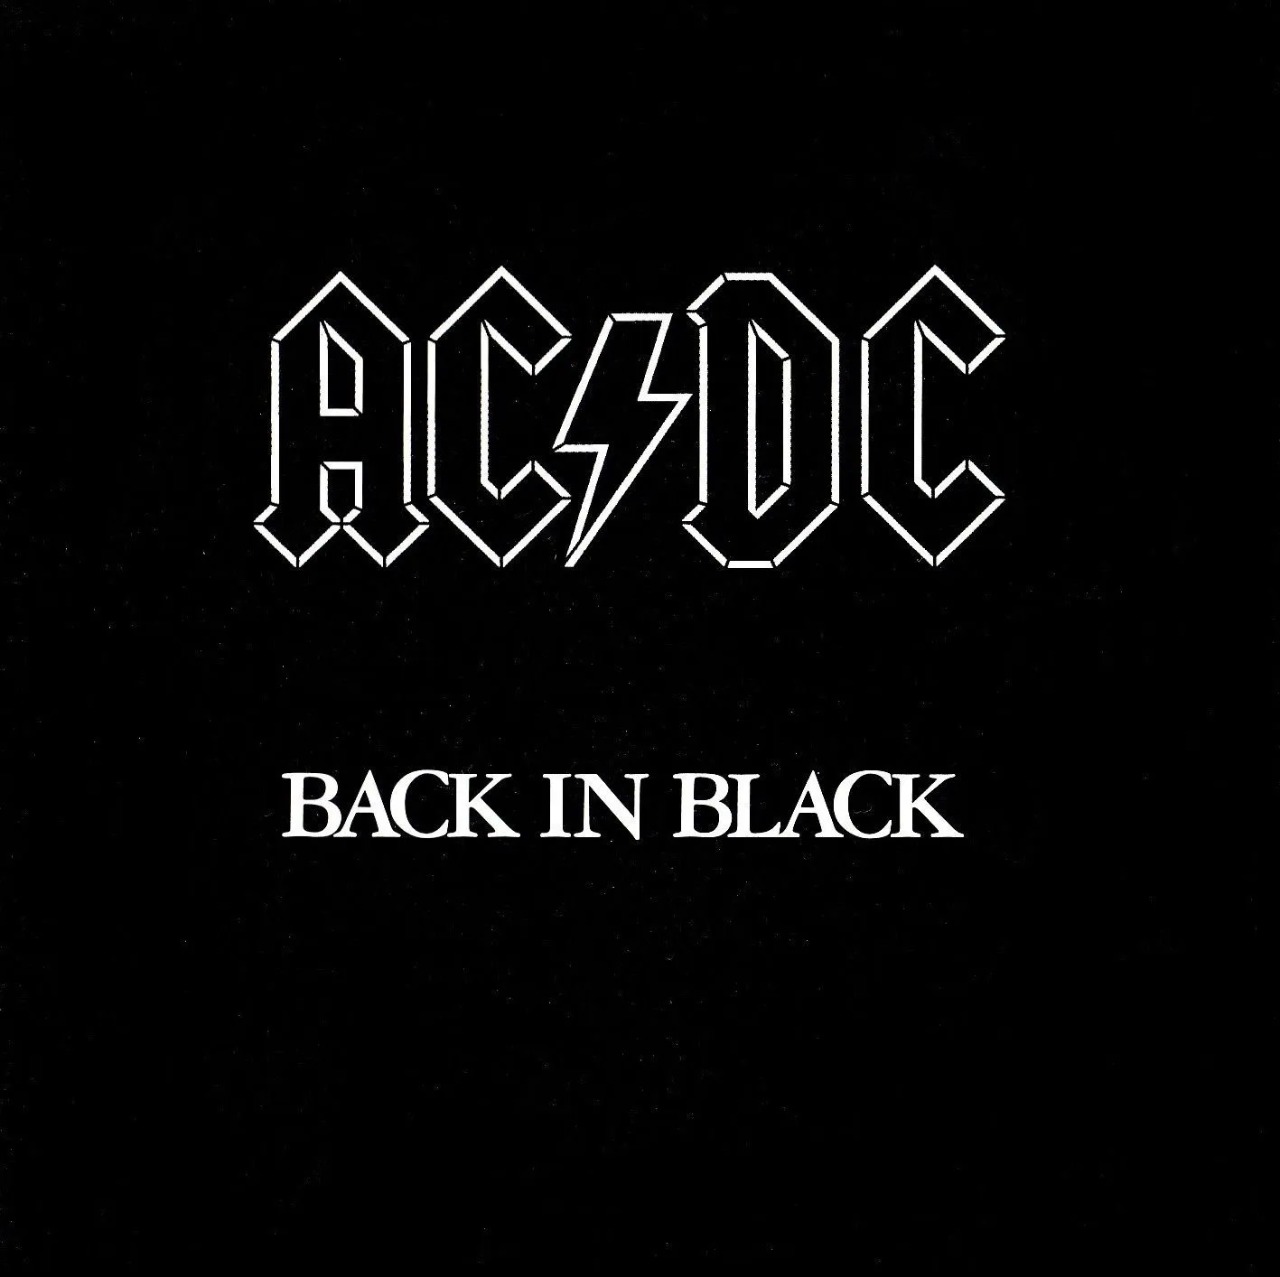 AC/DC: la historia detrás “Back in Black”, el álbum de rock más vendido de la historia